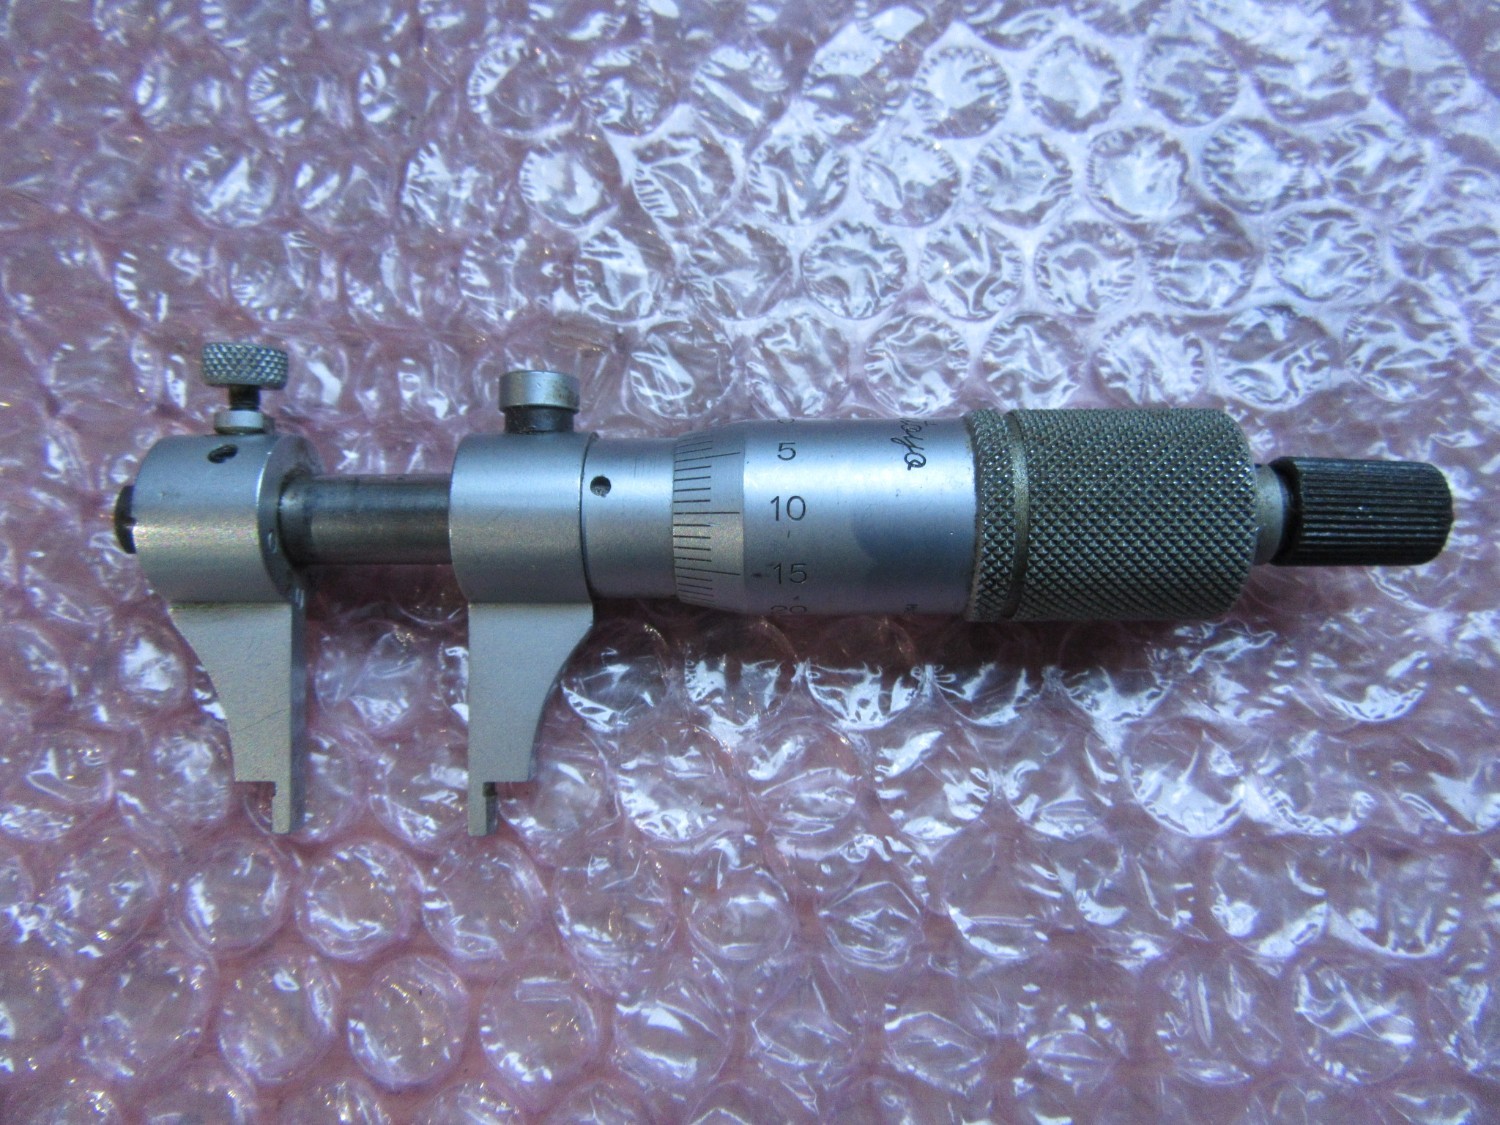 中古Other(Micrometer) 【キャリパー形内側マイクロメーター】測定範囲5-25mm Mitutoyo